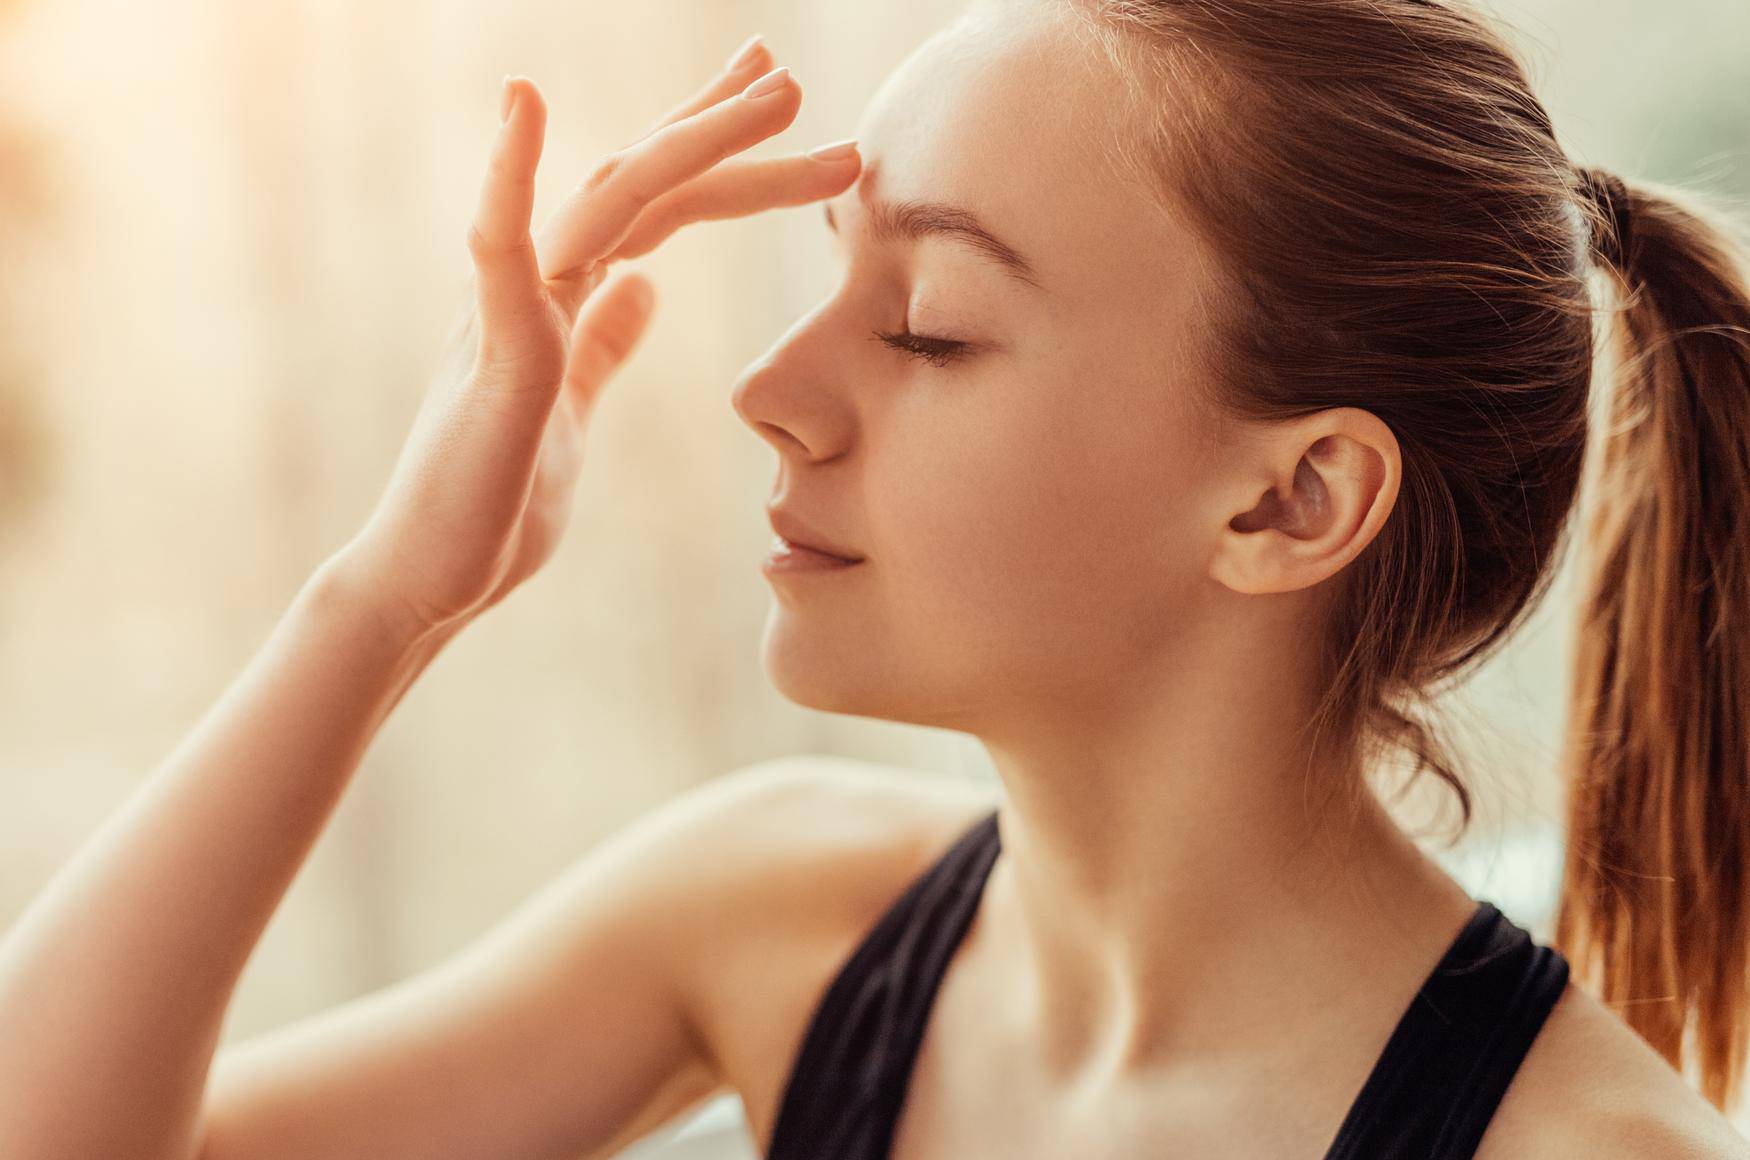 Young woman massaging third eye chakra